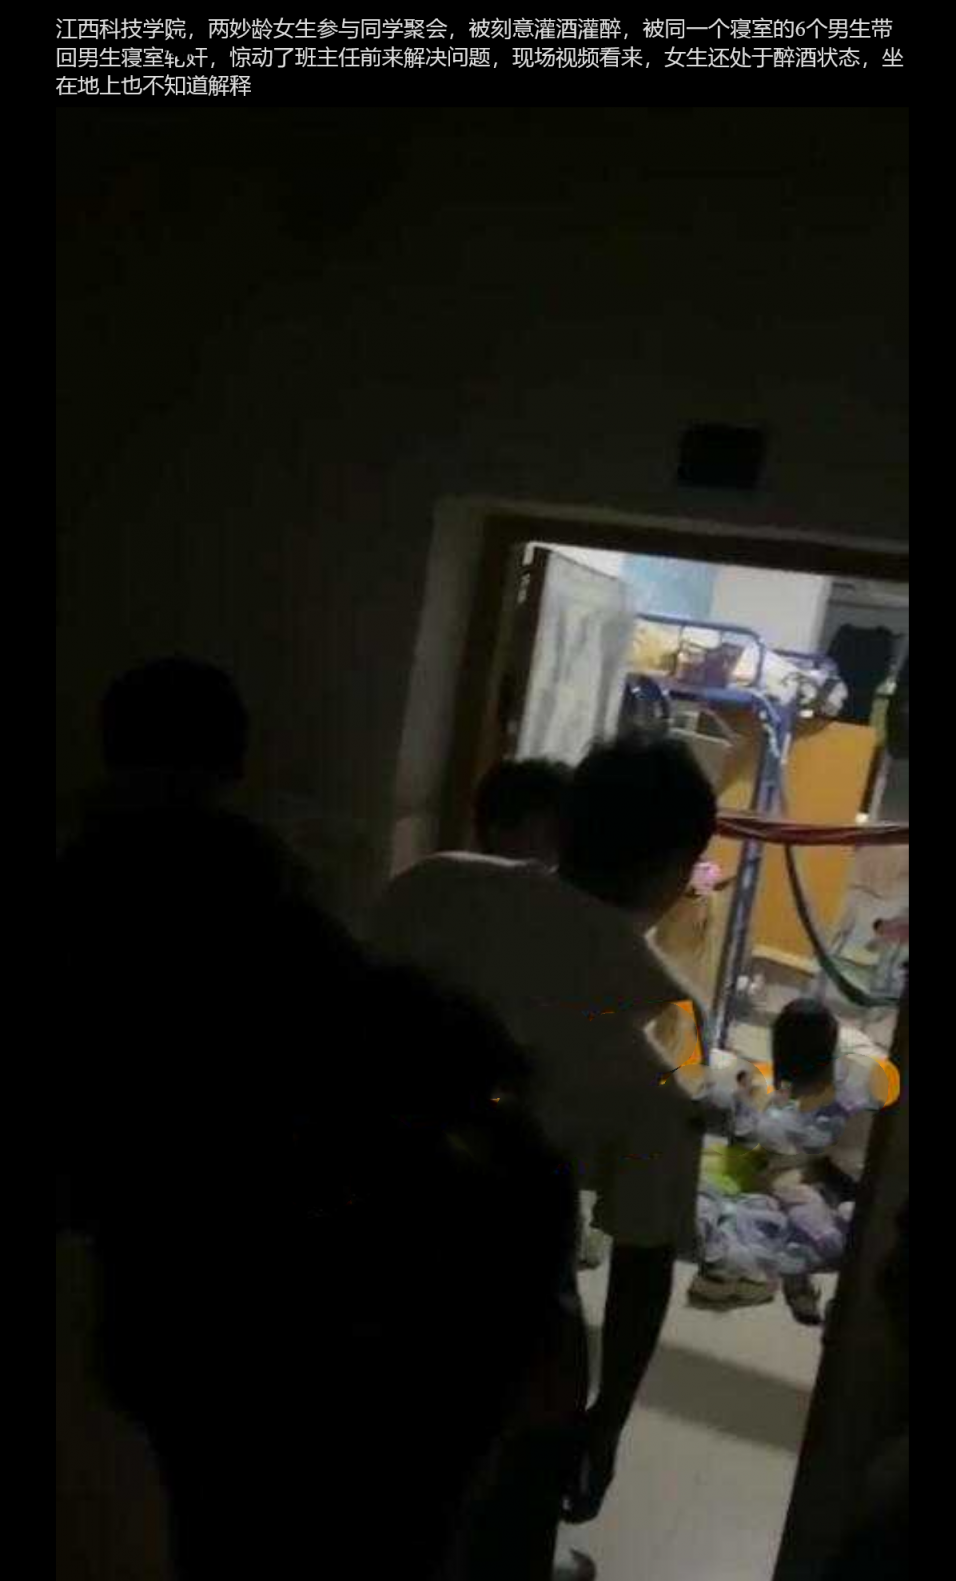 江西科技学院 两女生参与同学聚会 被灌醉后带回寝室6人L奸 现场视频曝光